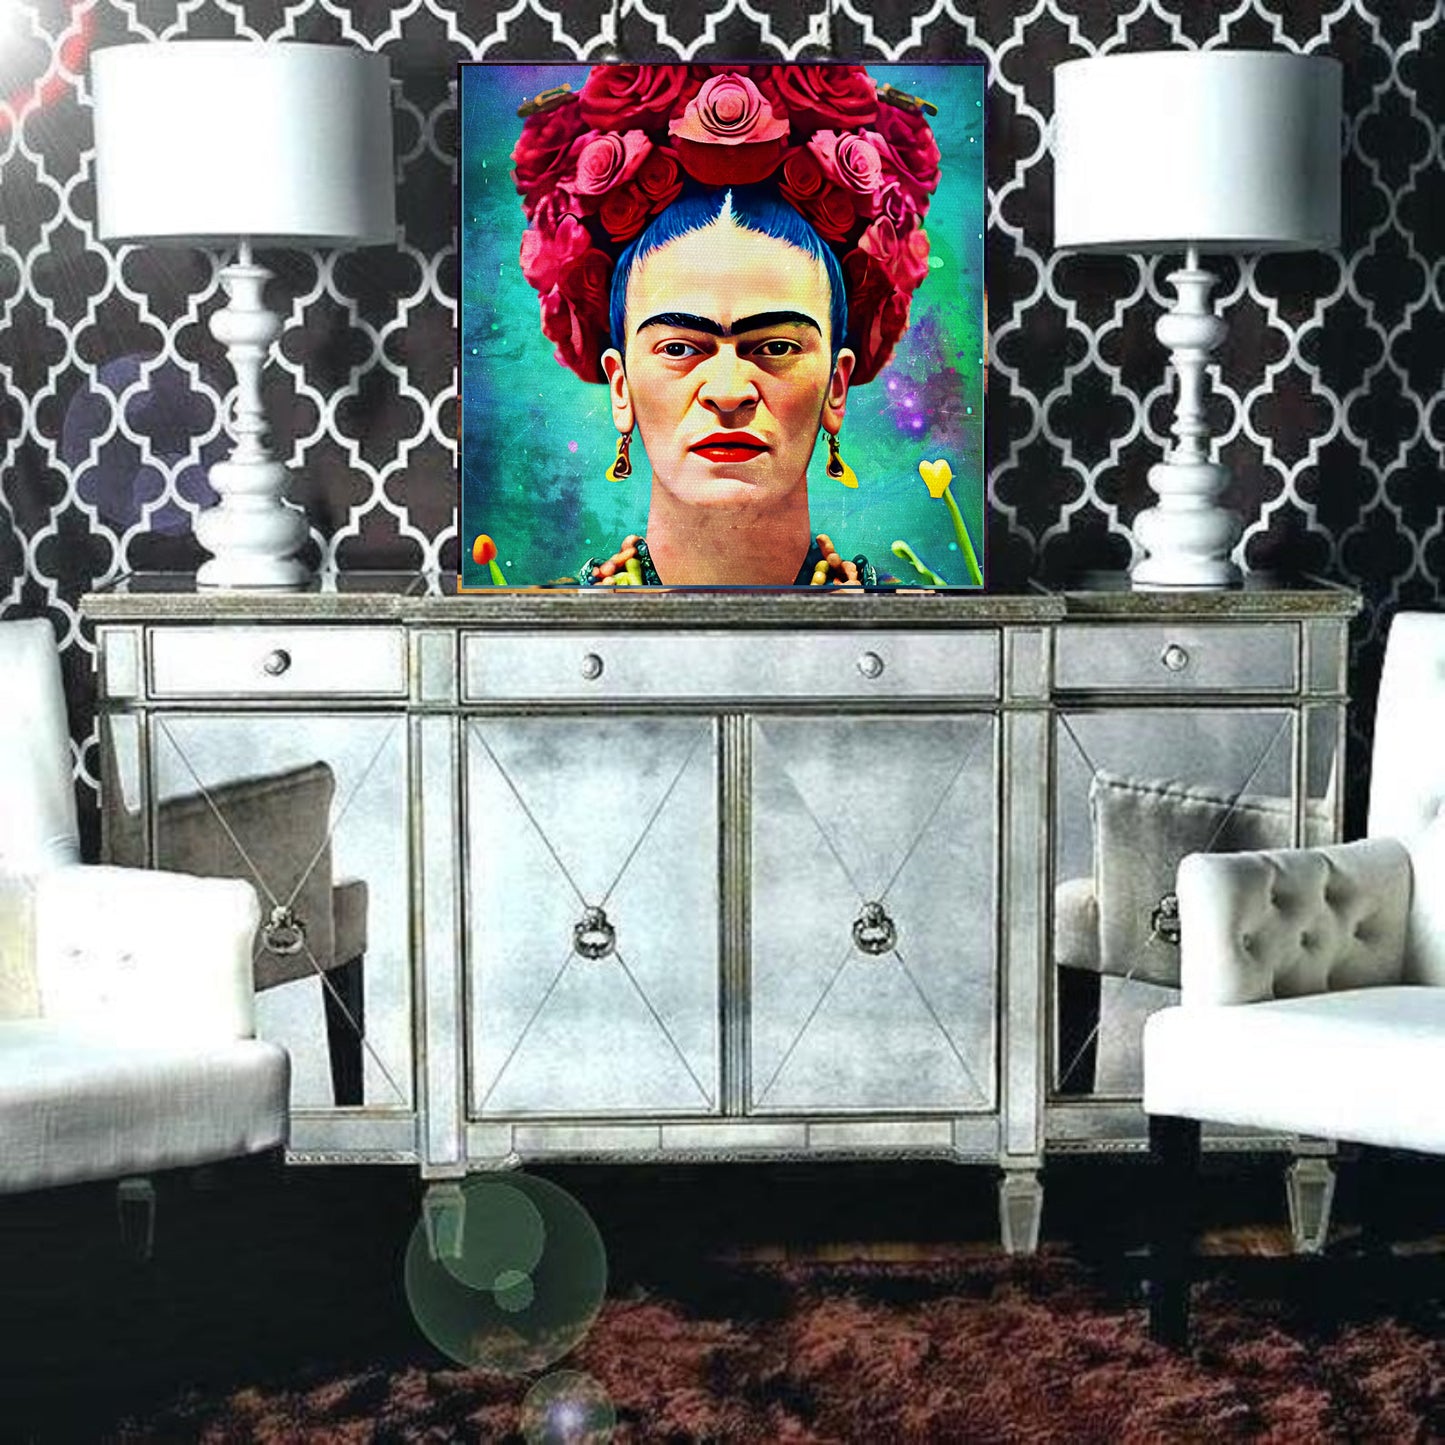 Frida Kahlo contemporary art